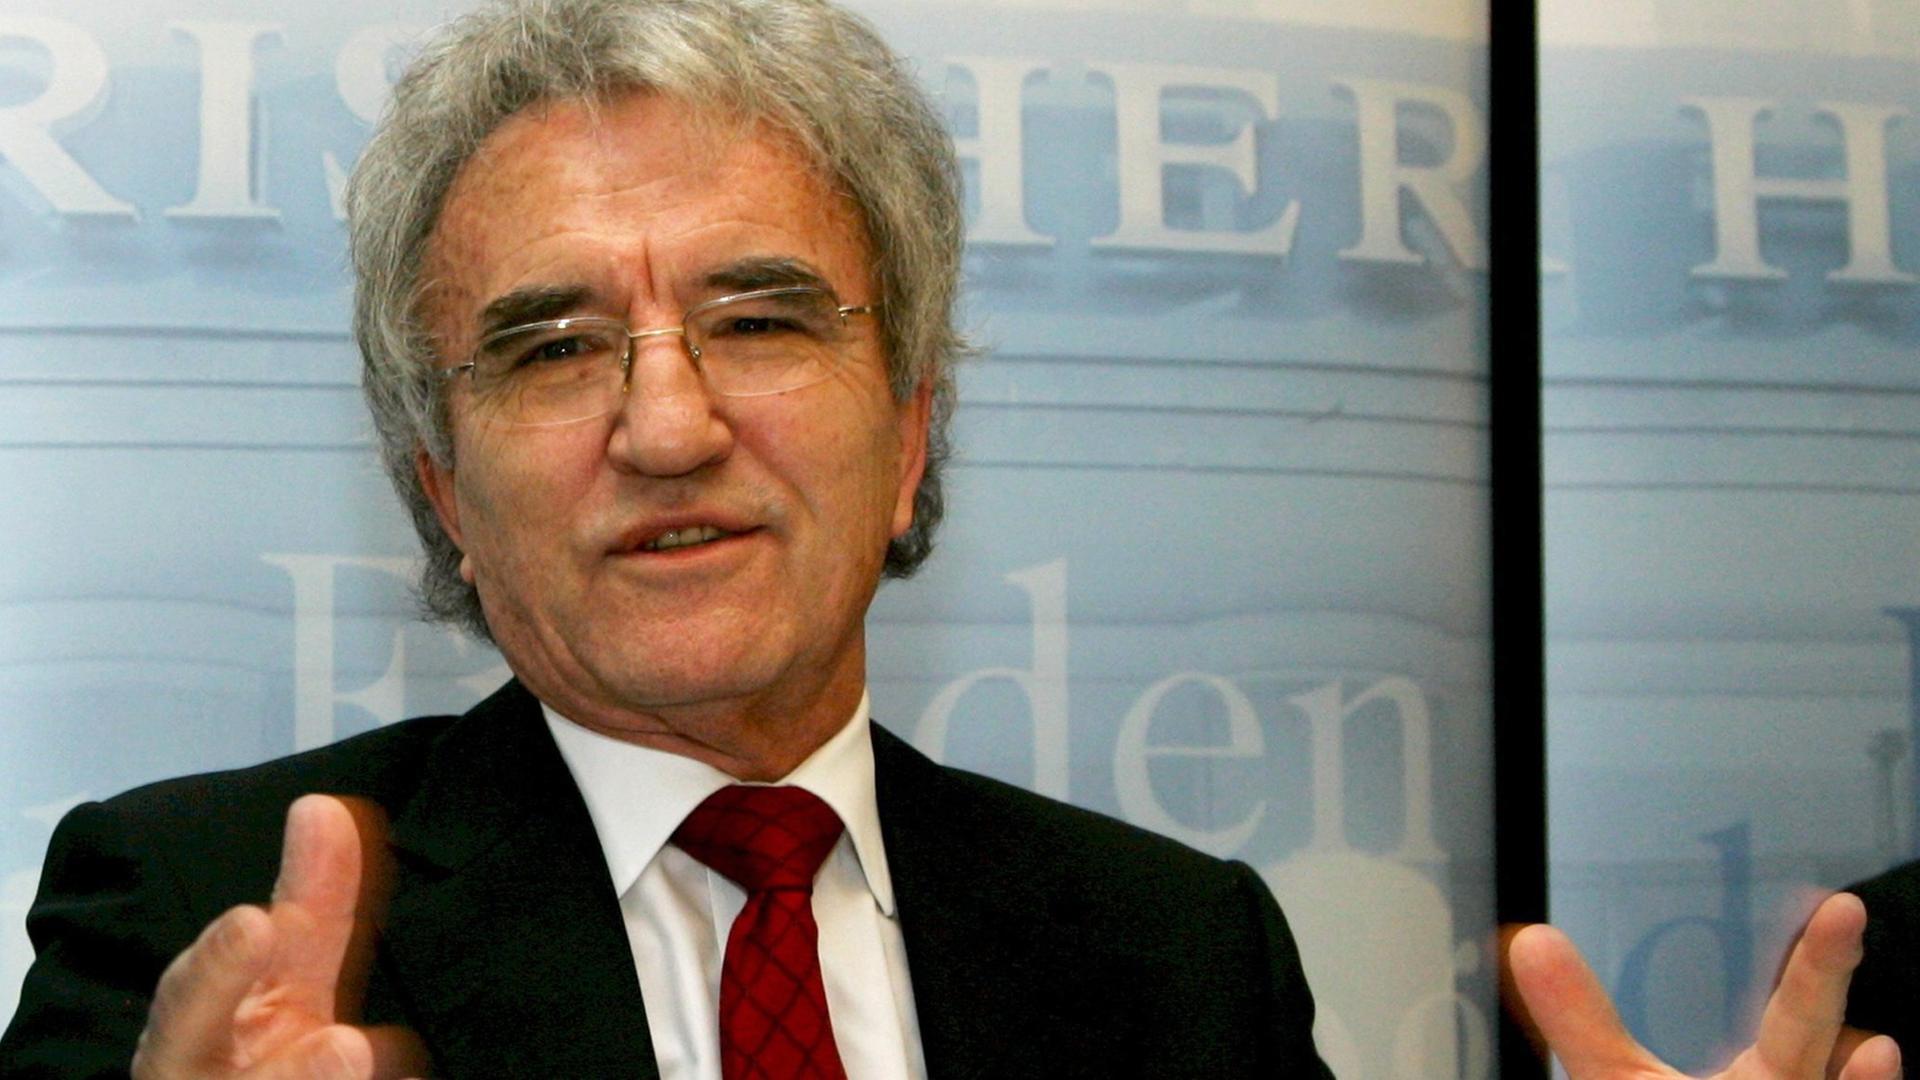 Der ehemalige Vorsitzende der Münchner Sicherheitskonferenz, Horst Teltschik, aufgenommen am 17.01.2008 in München.